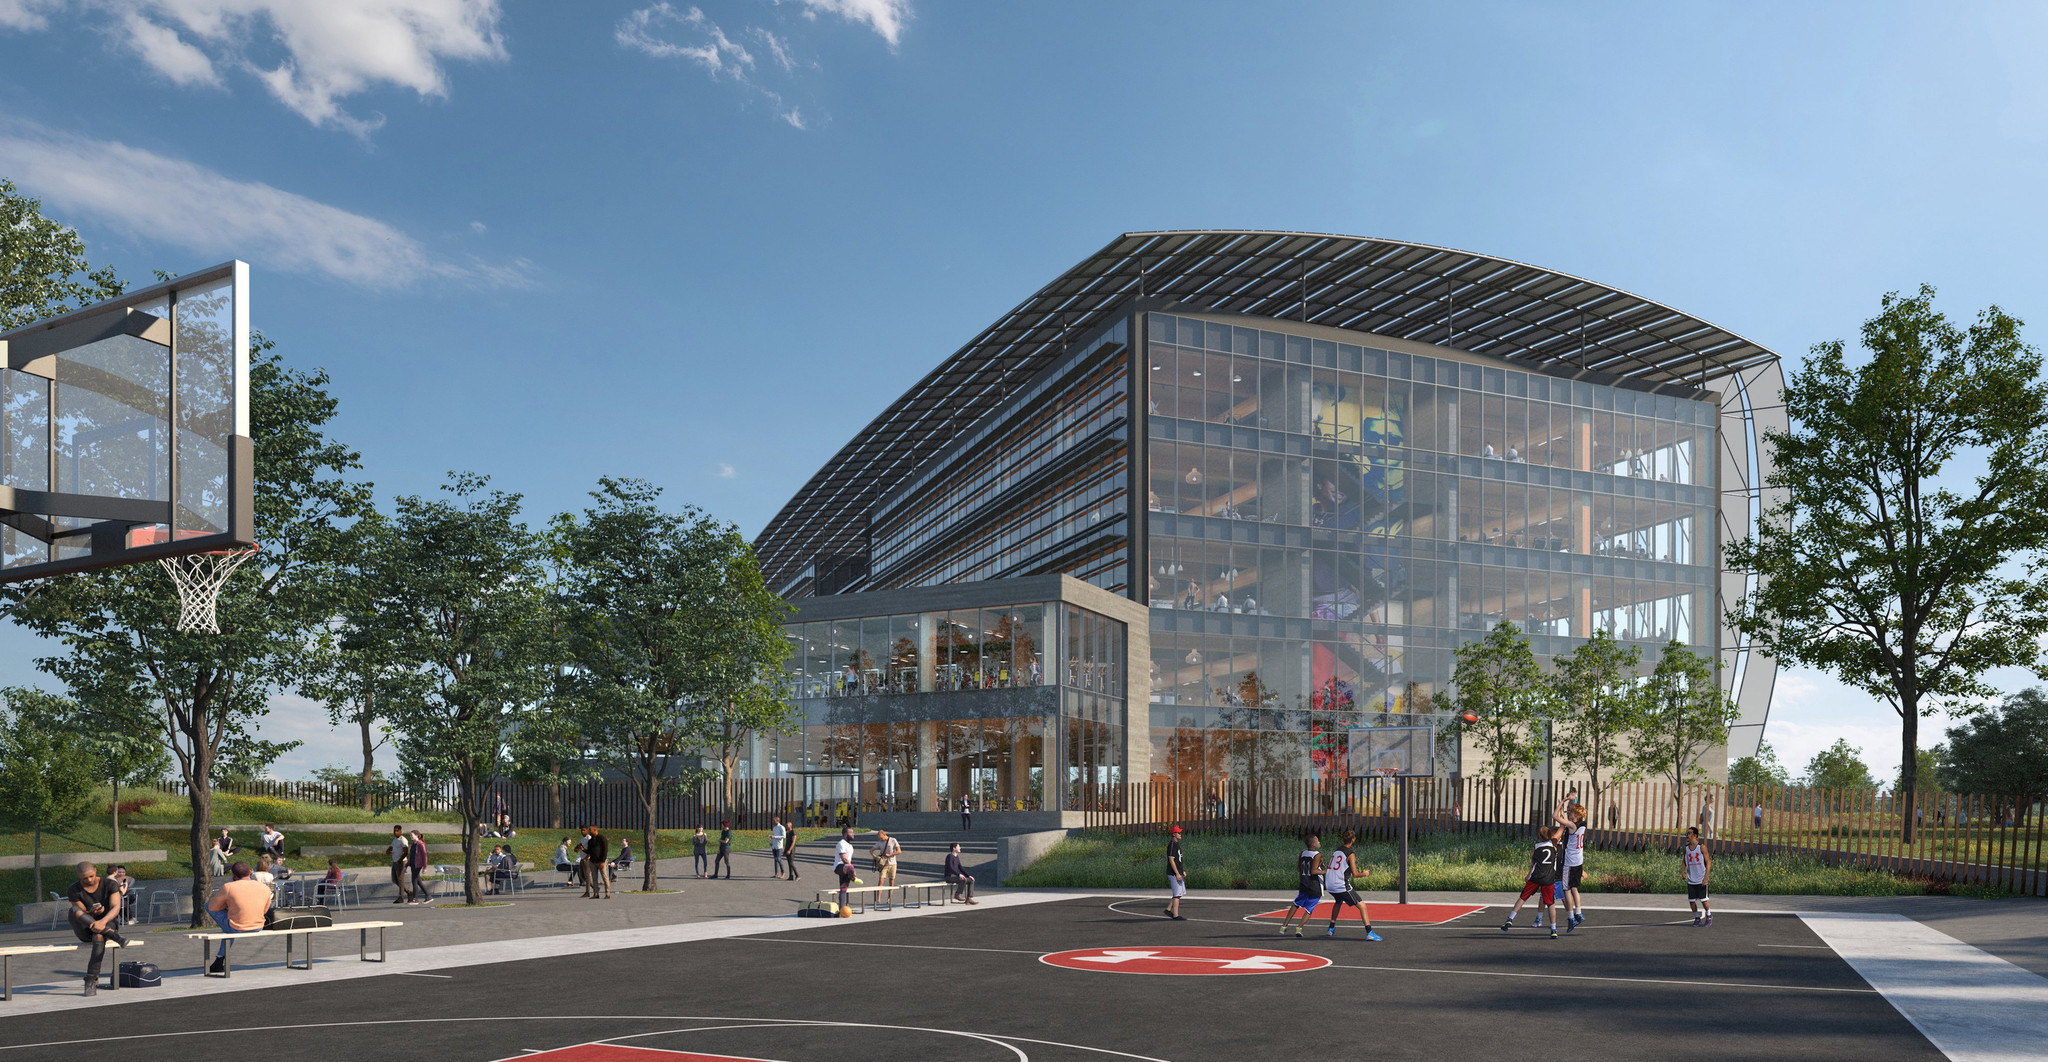 Maken Anders Knikken Under Armour reveals modern, stadium-like design for global headquarters in  Port Covington